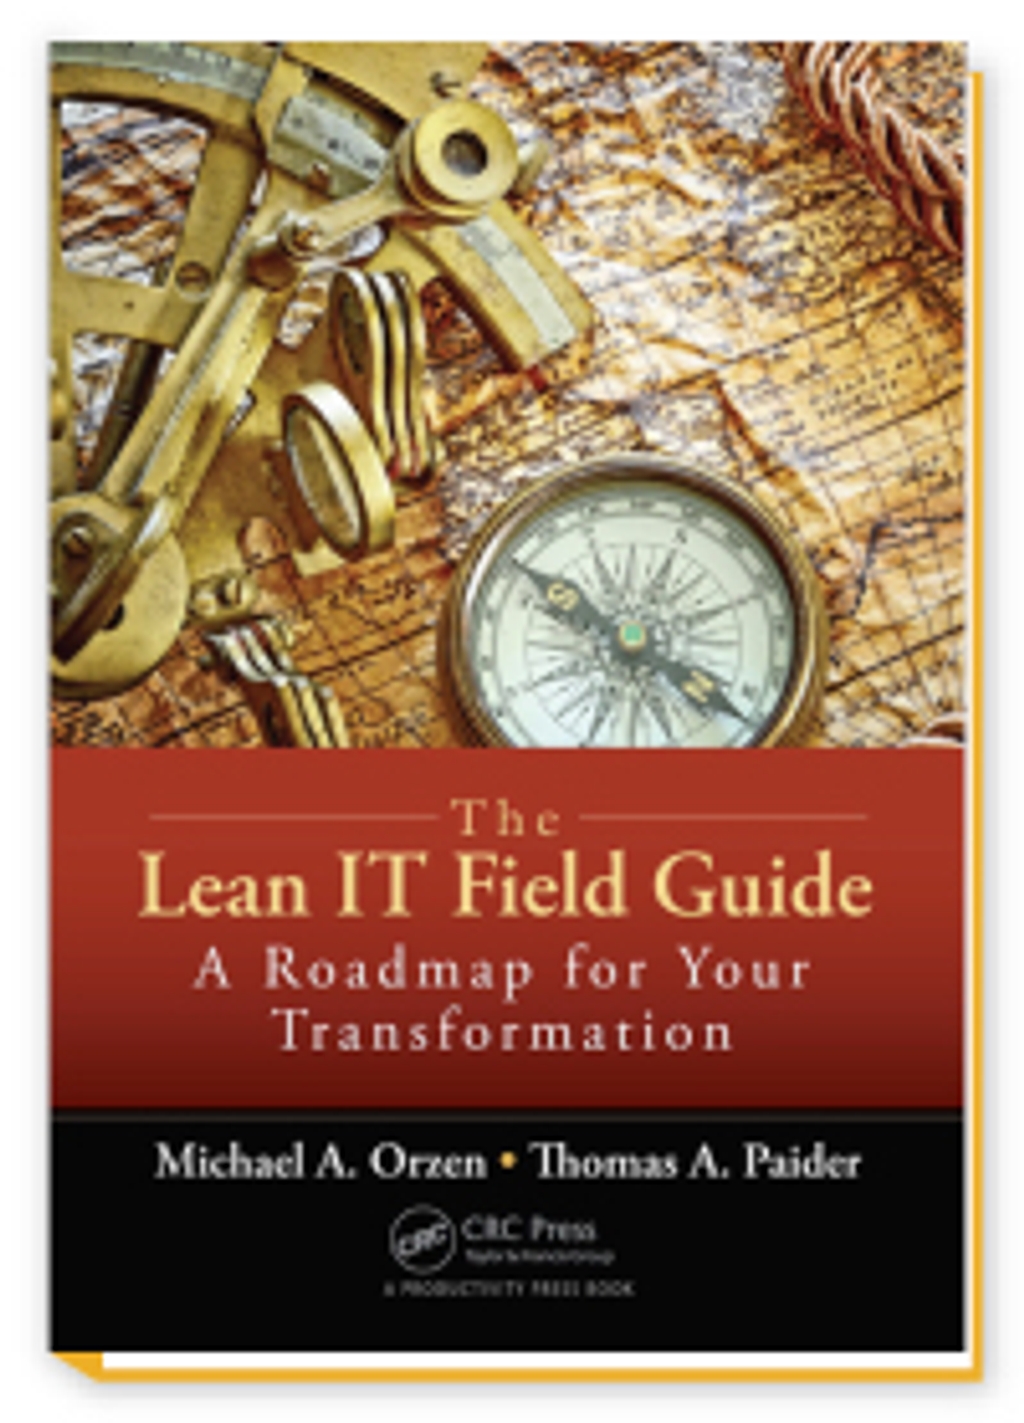 Lean IT Field Guide